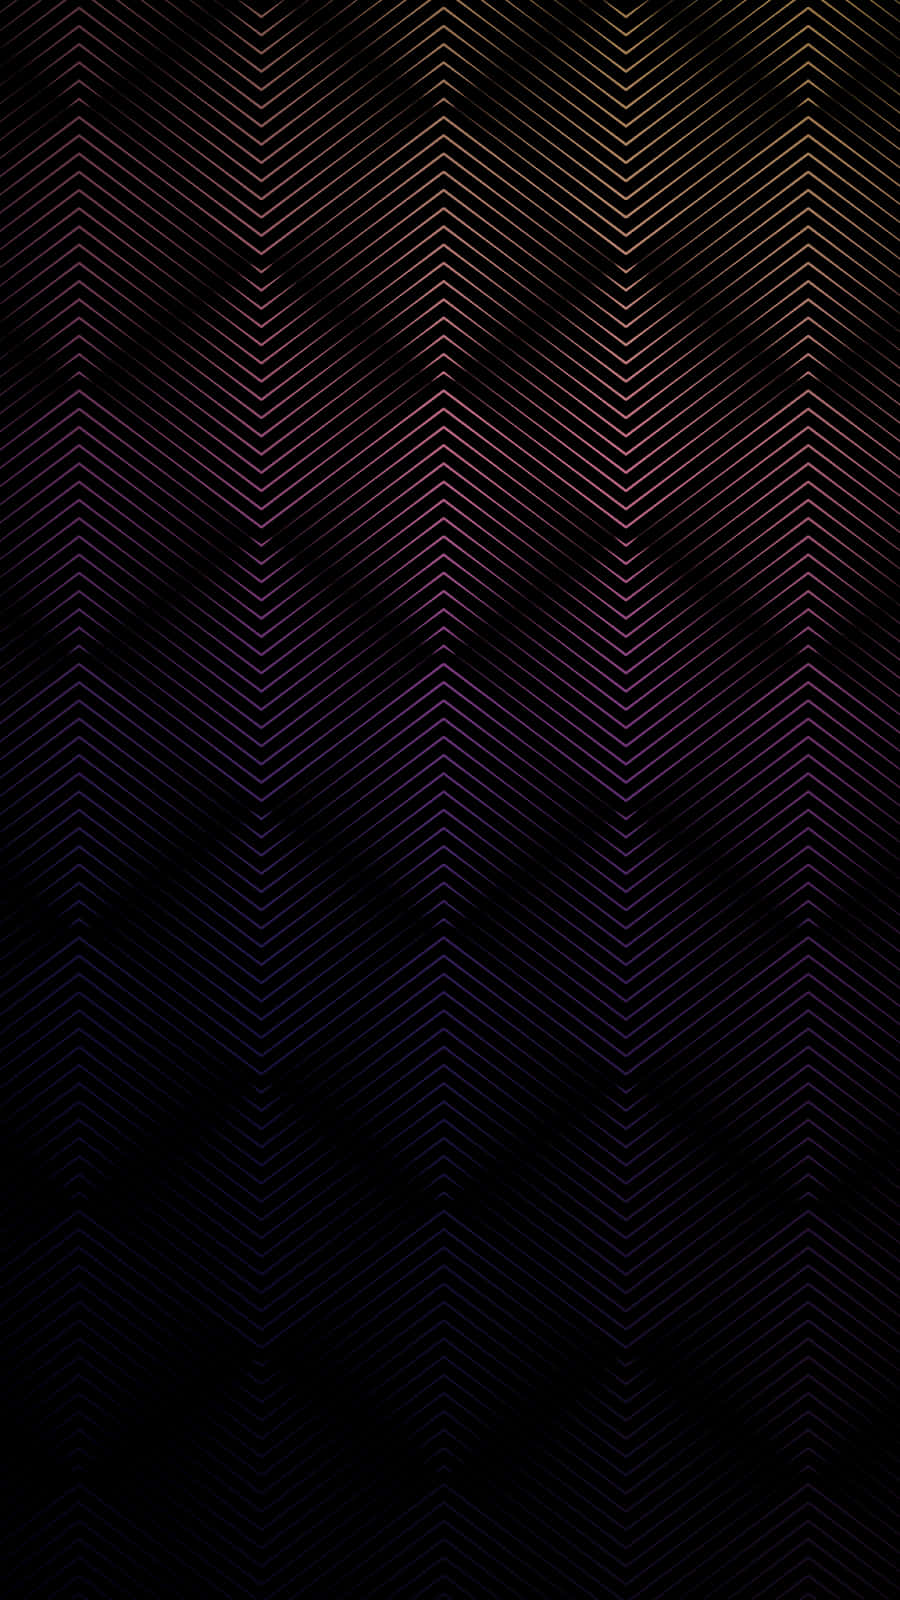 Unfondo De Pantalla Con Un Patrón En Zigzag En Color Negro Y Morado. Fondo de pantalla